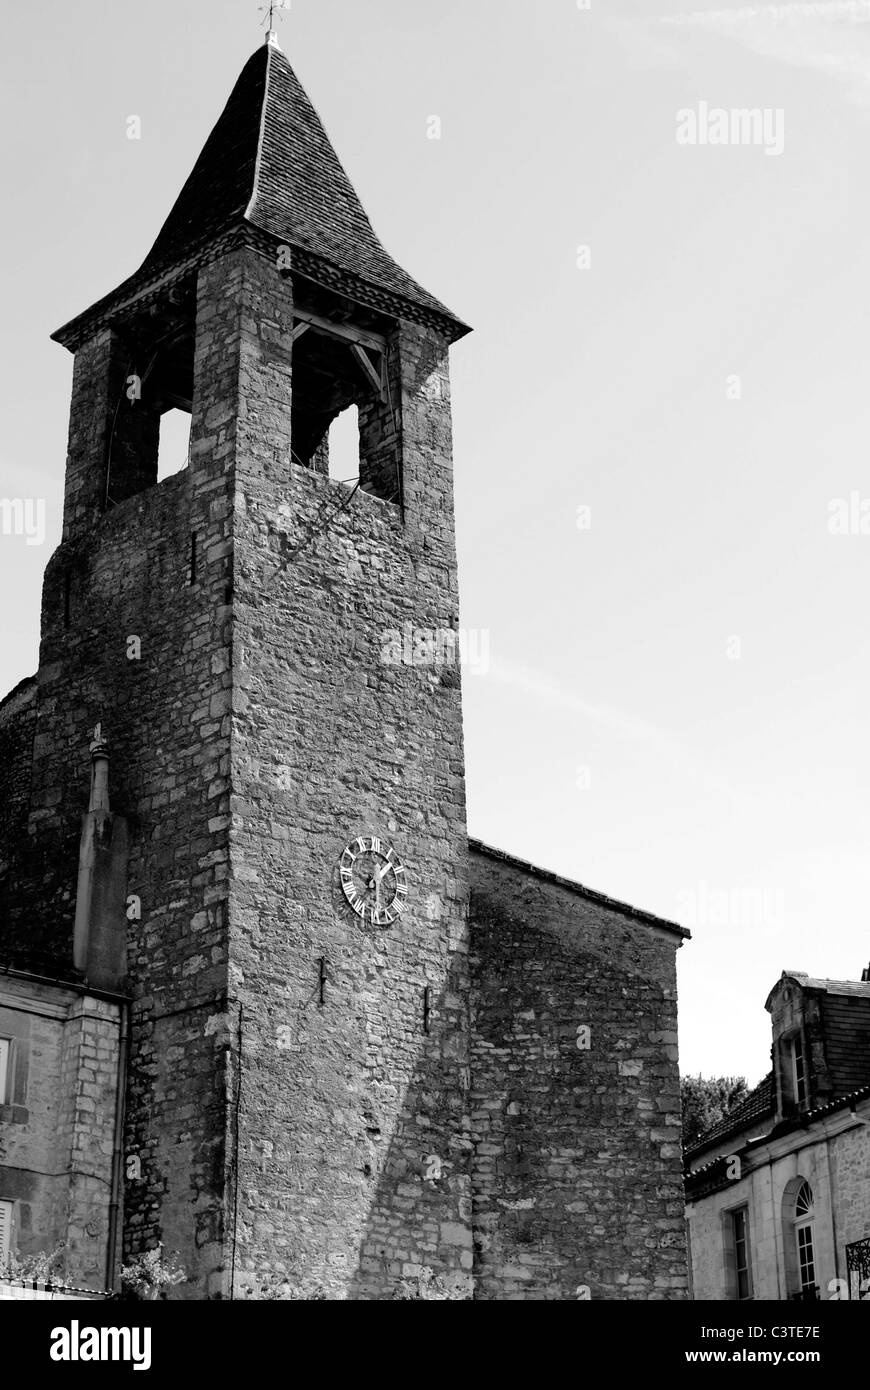 Une vue en noir et blanc d'une église romane dans la ville médiévale de Belvès en France Banque D'Images